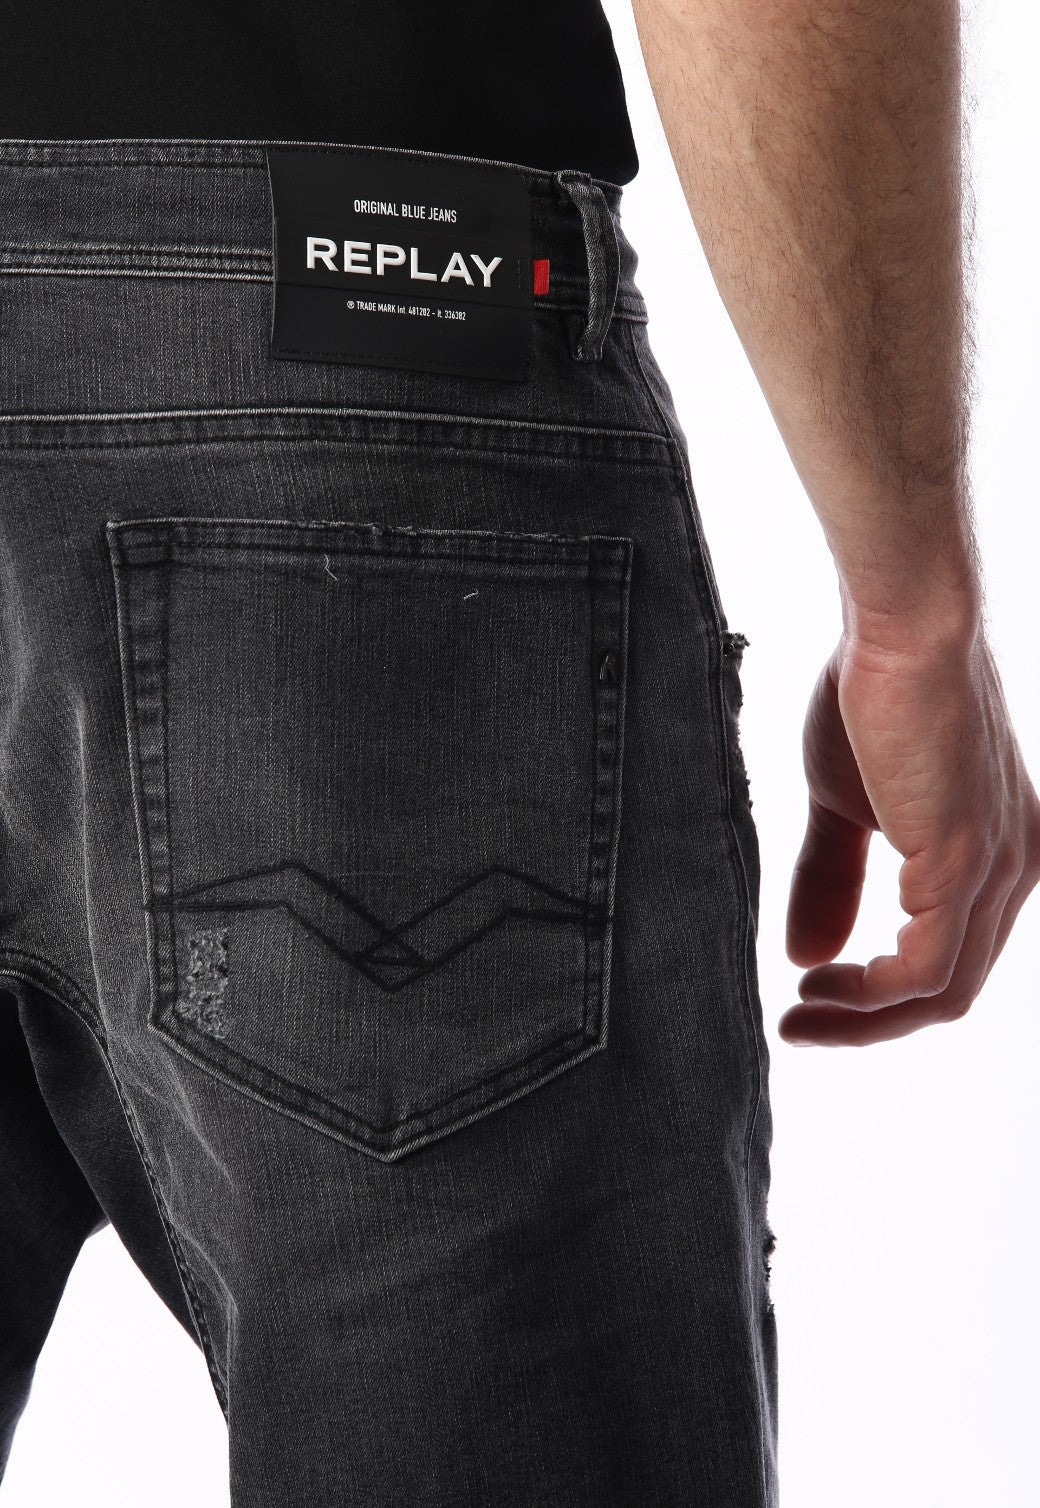 ג'ינס קצר עם שפשוף | גברים GREY / 31